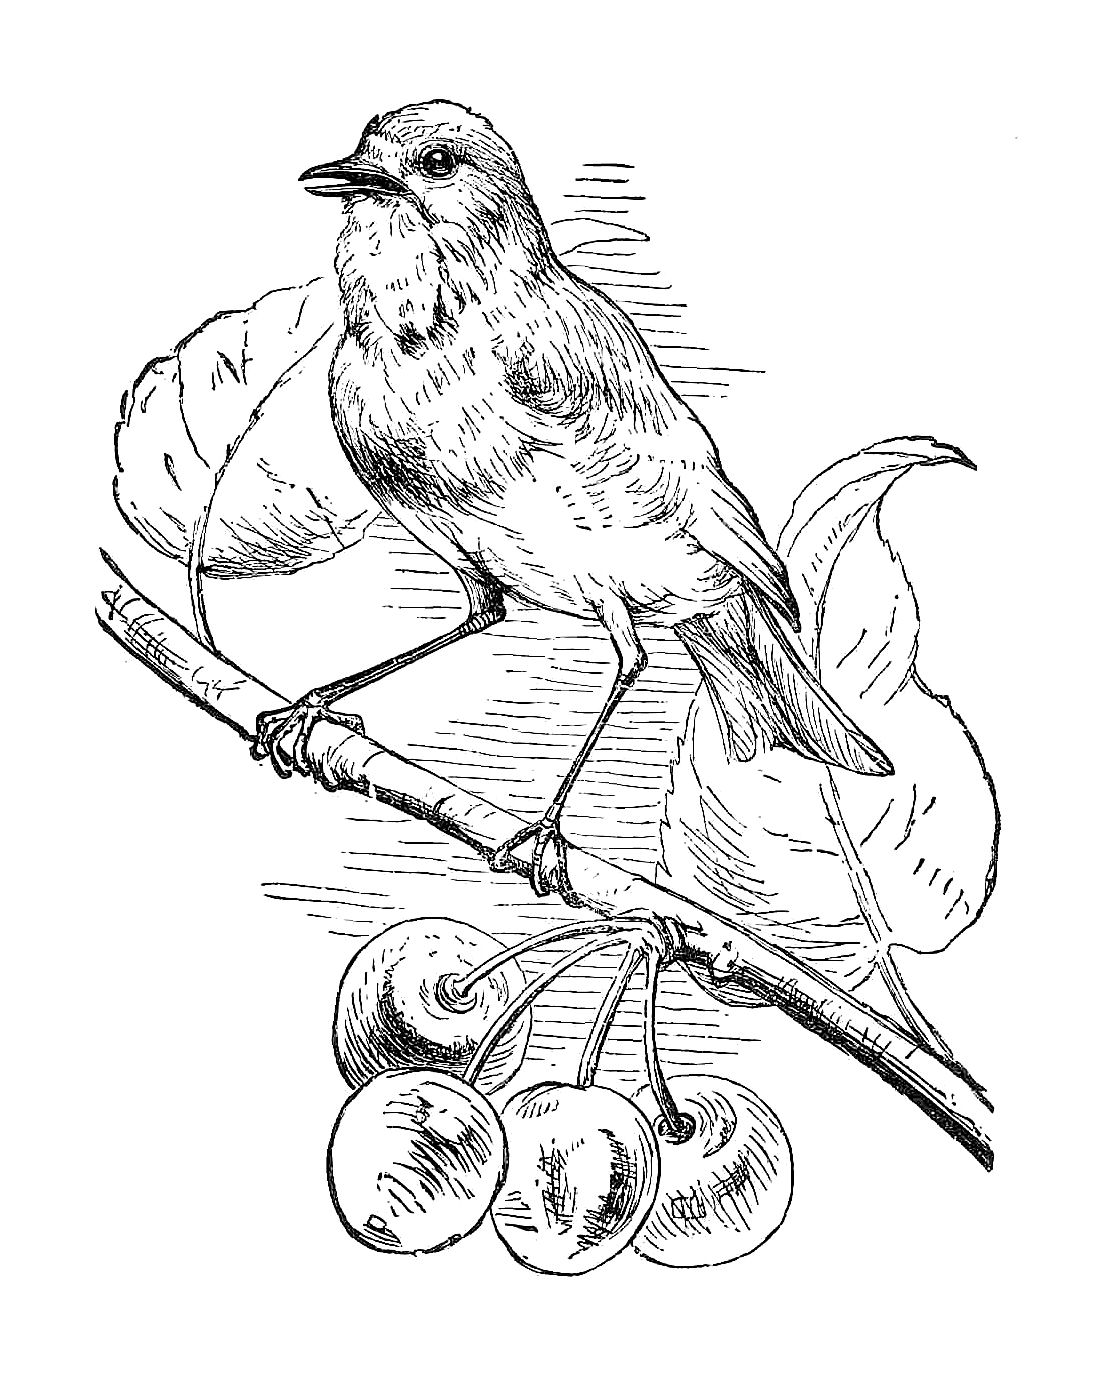 birds illustration